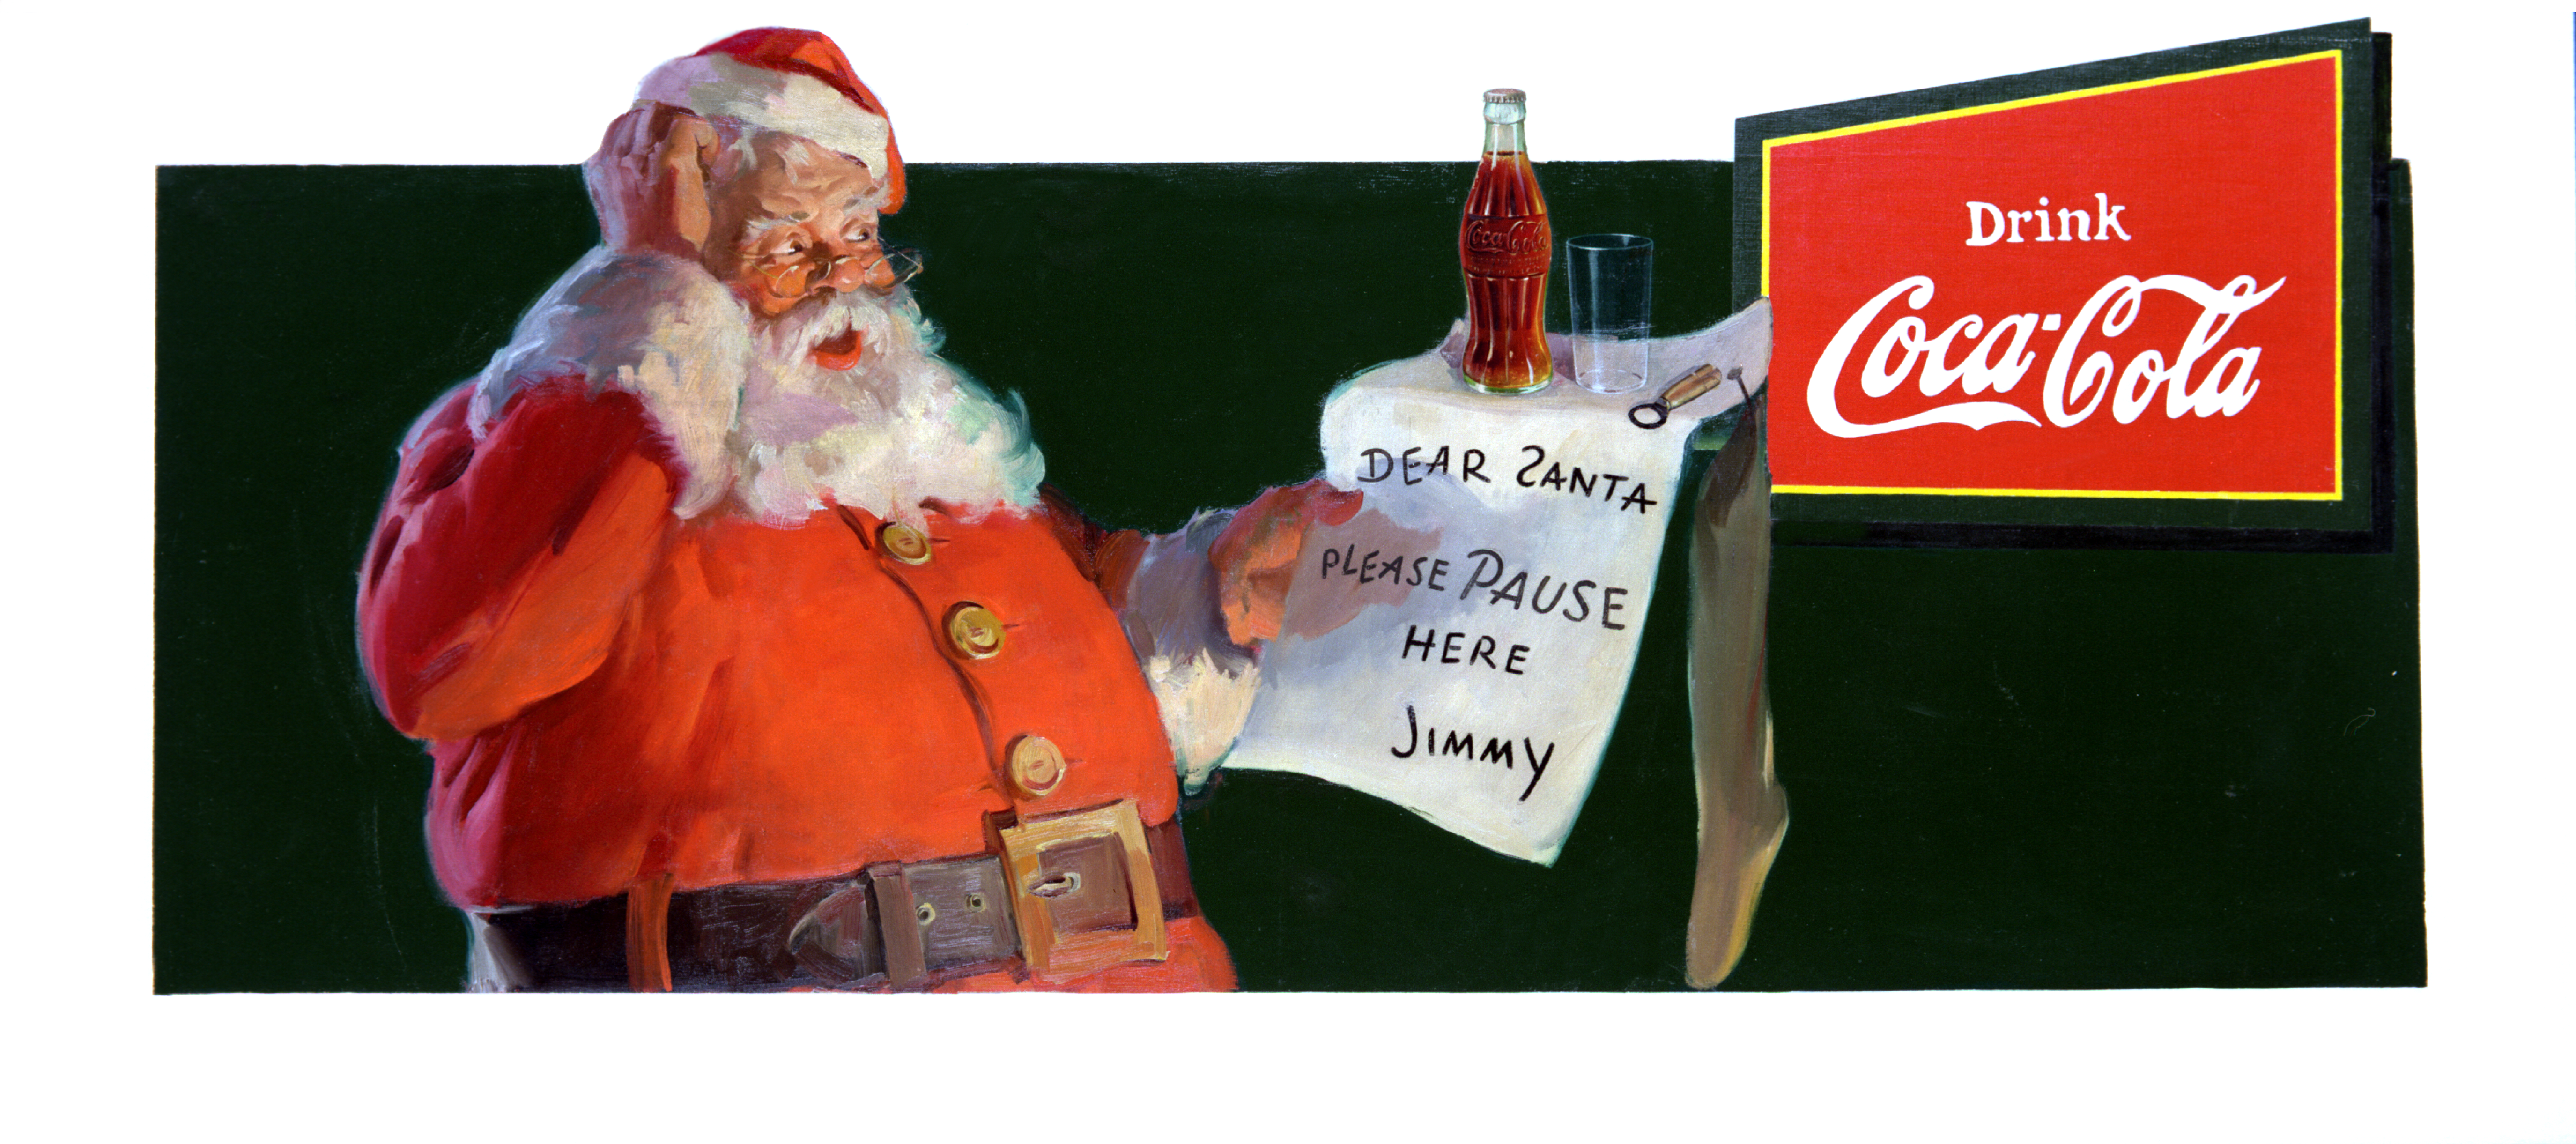 Publicité historique Coca-Cola - Père Noël 1932 - Drink Coca-Cola